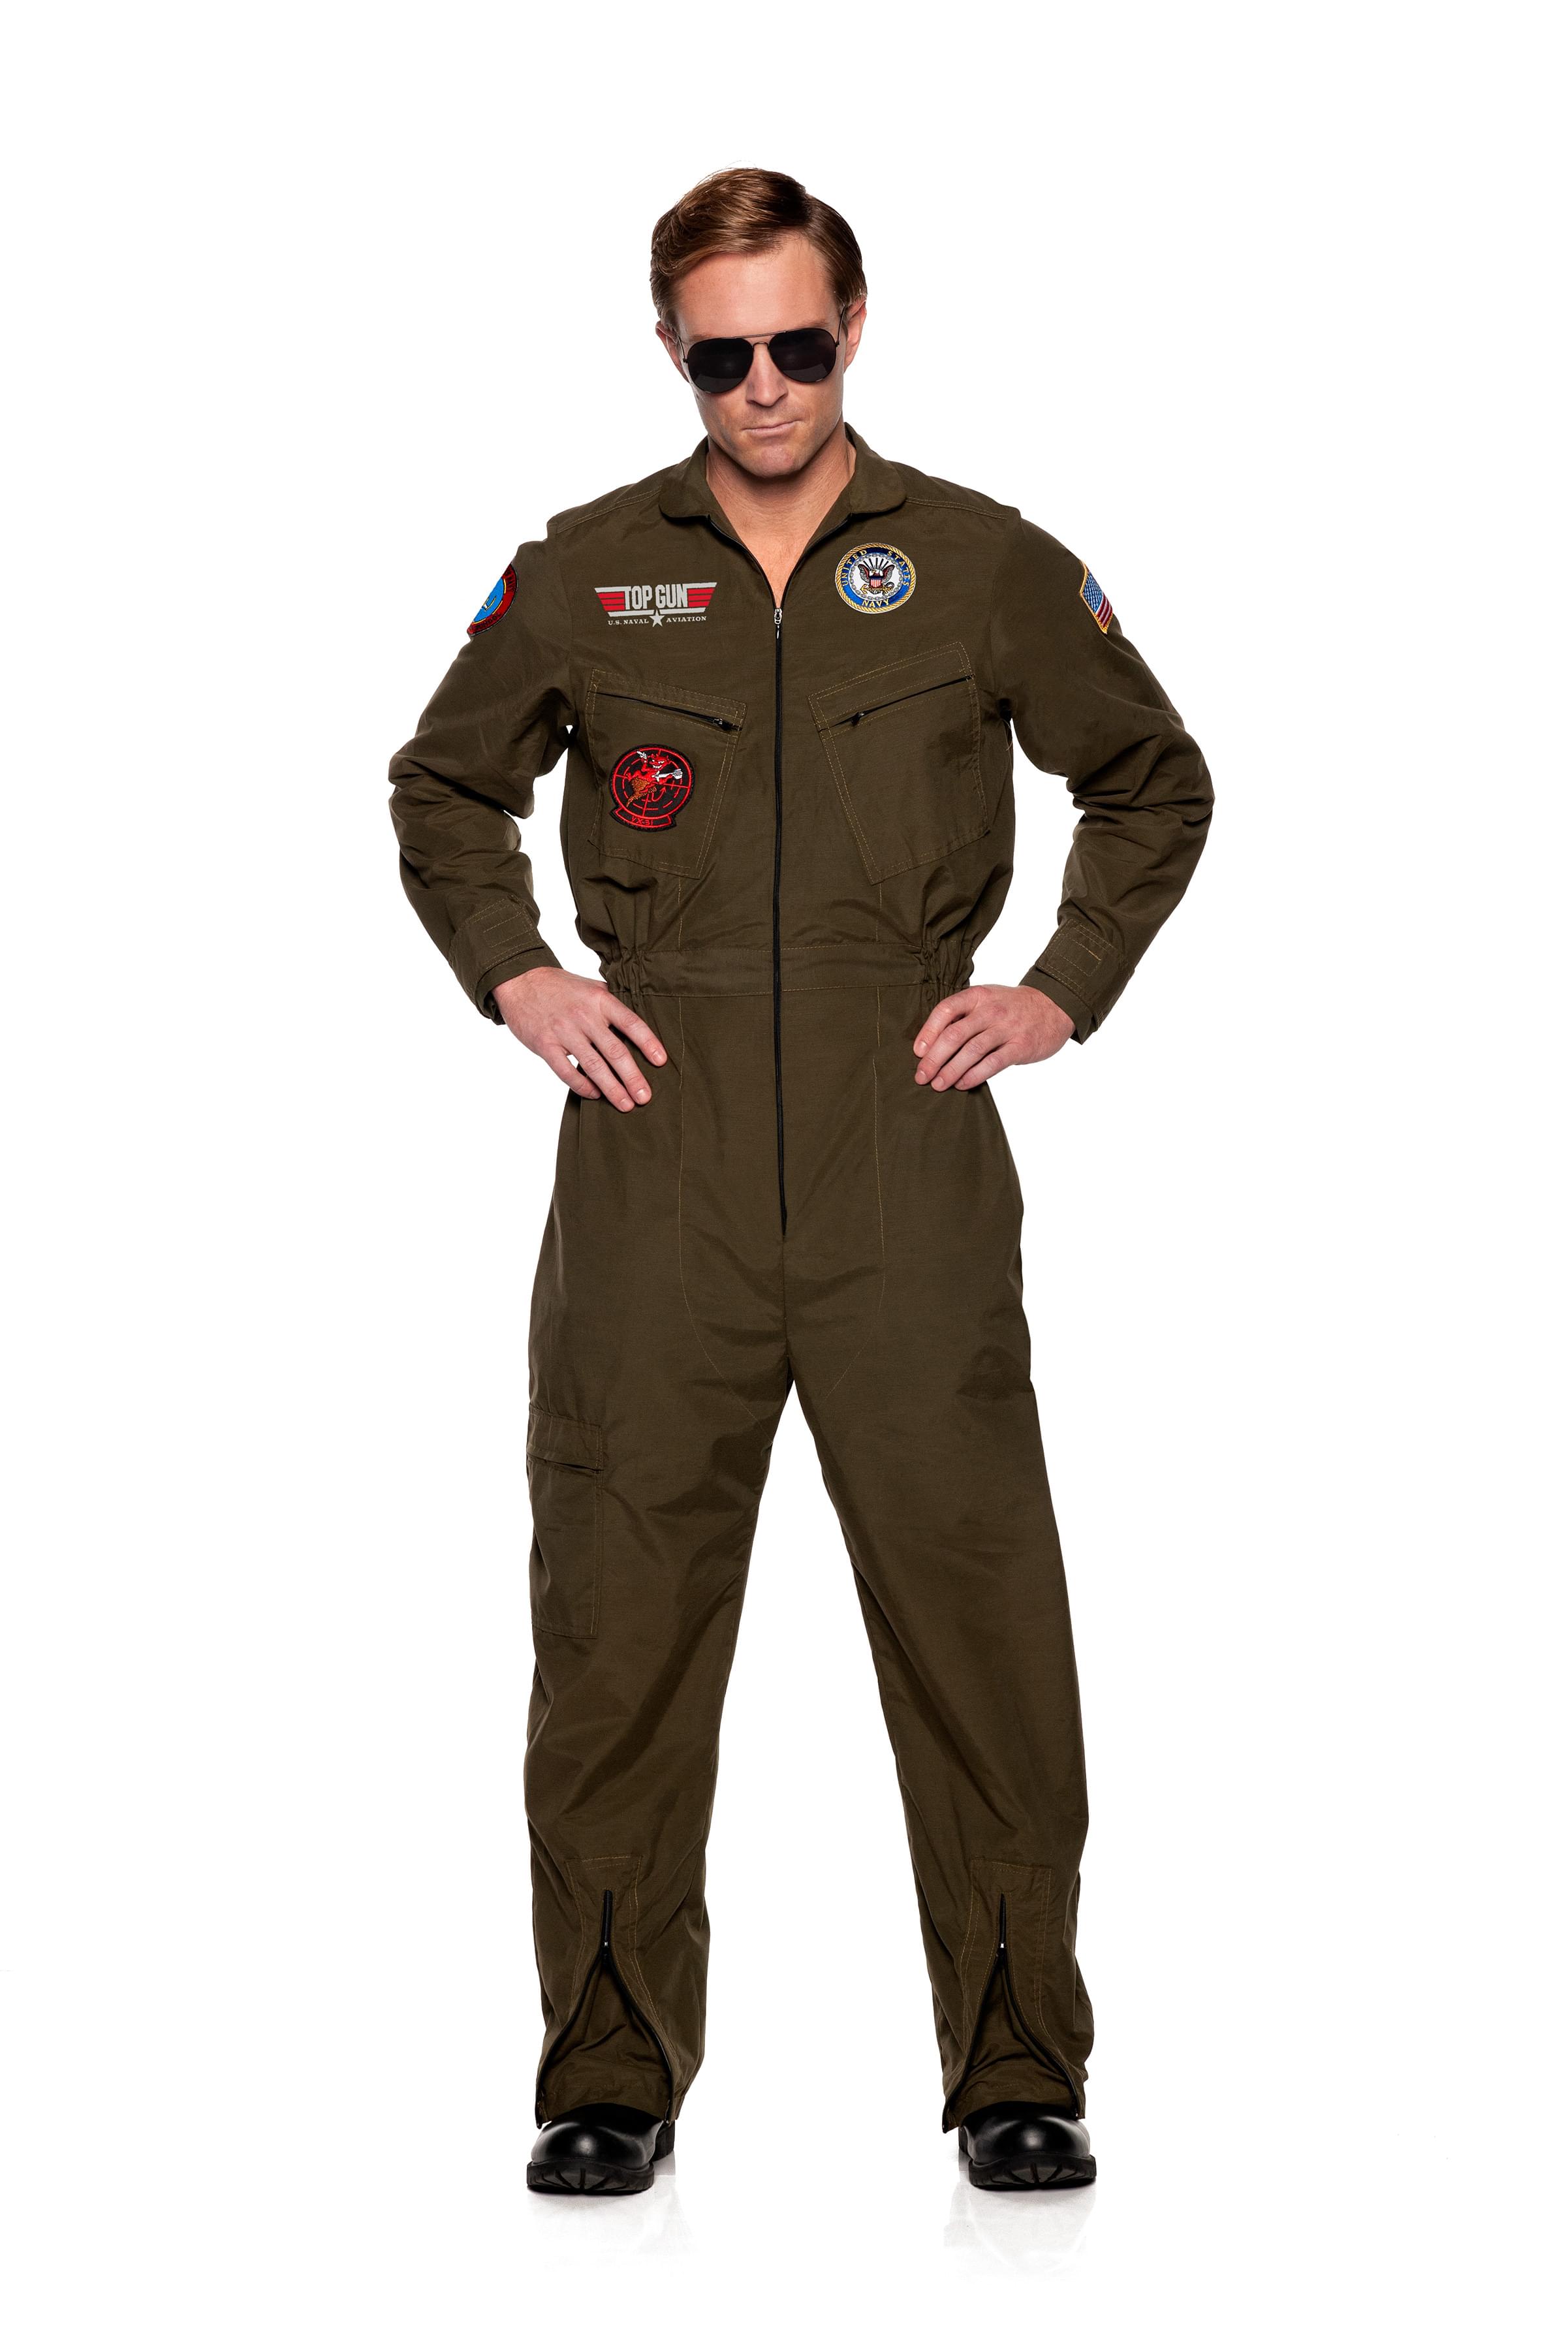 Photos - Fancy Dress NAVY Top Gun Men's Pilot Jumpsuit Adult Costume UDW-30544OS-C 